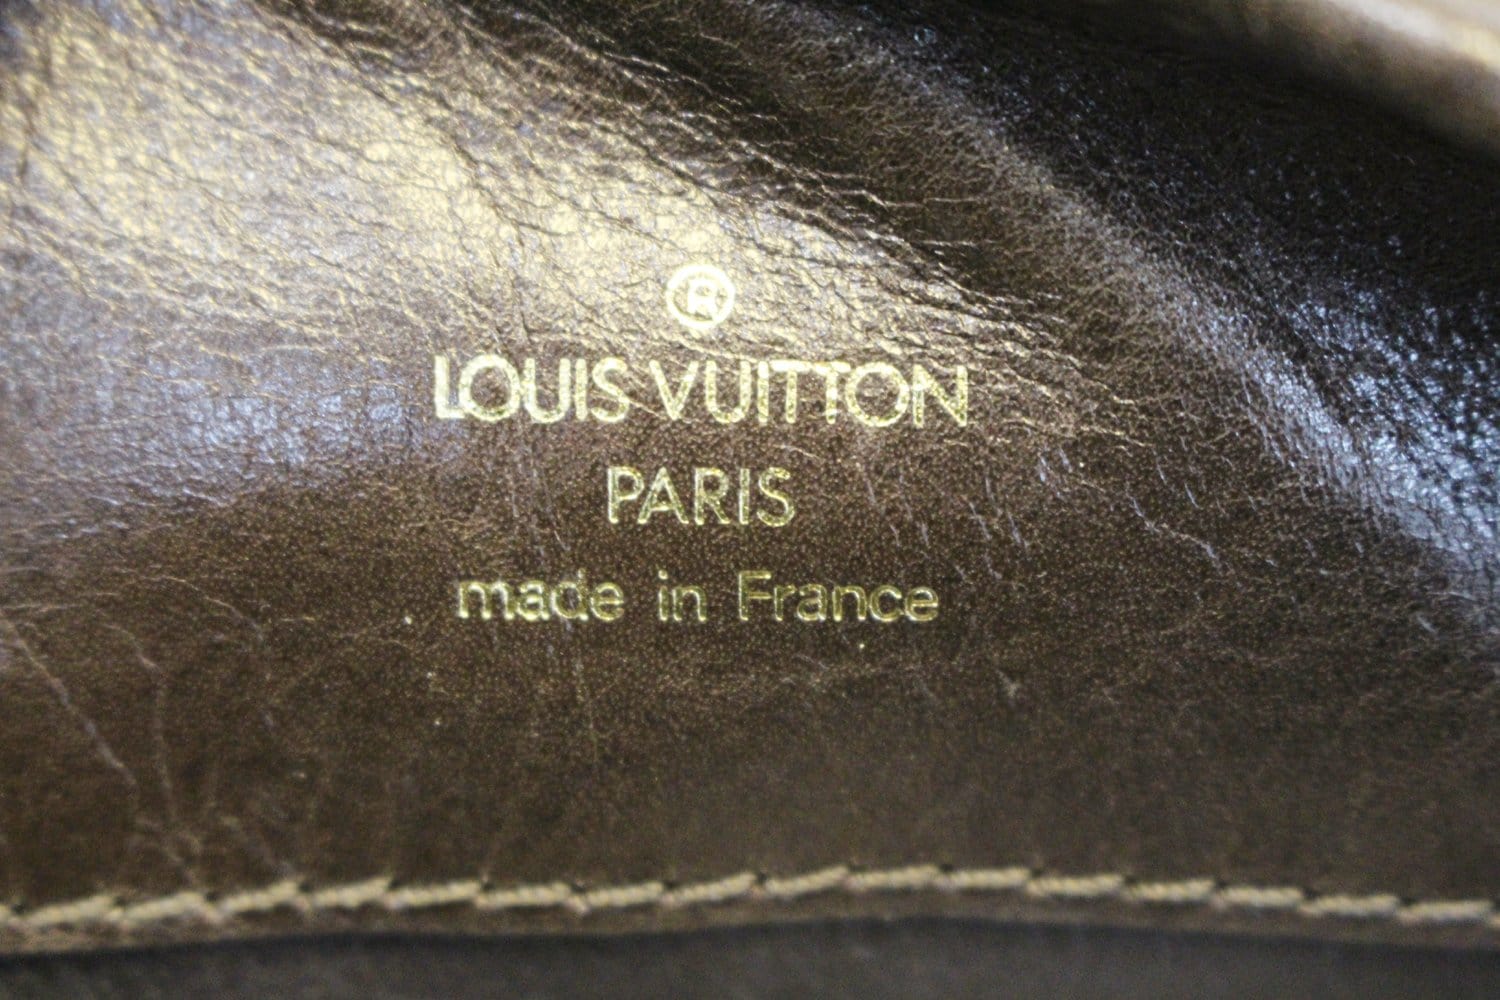 LOUIS VUITTON Musette Shoulder Bag Monogram Leather Brown M51256 M1280A508  JUNK